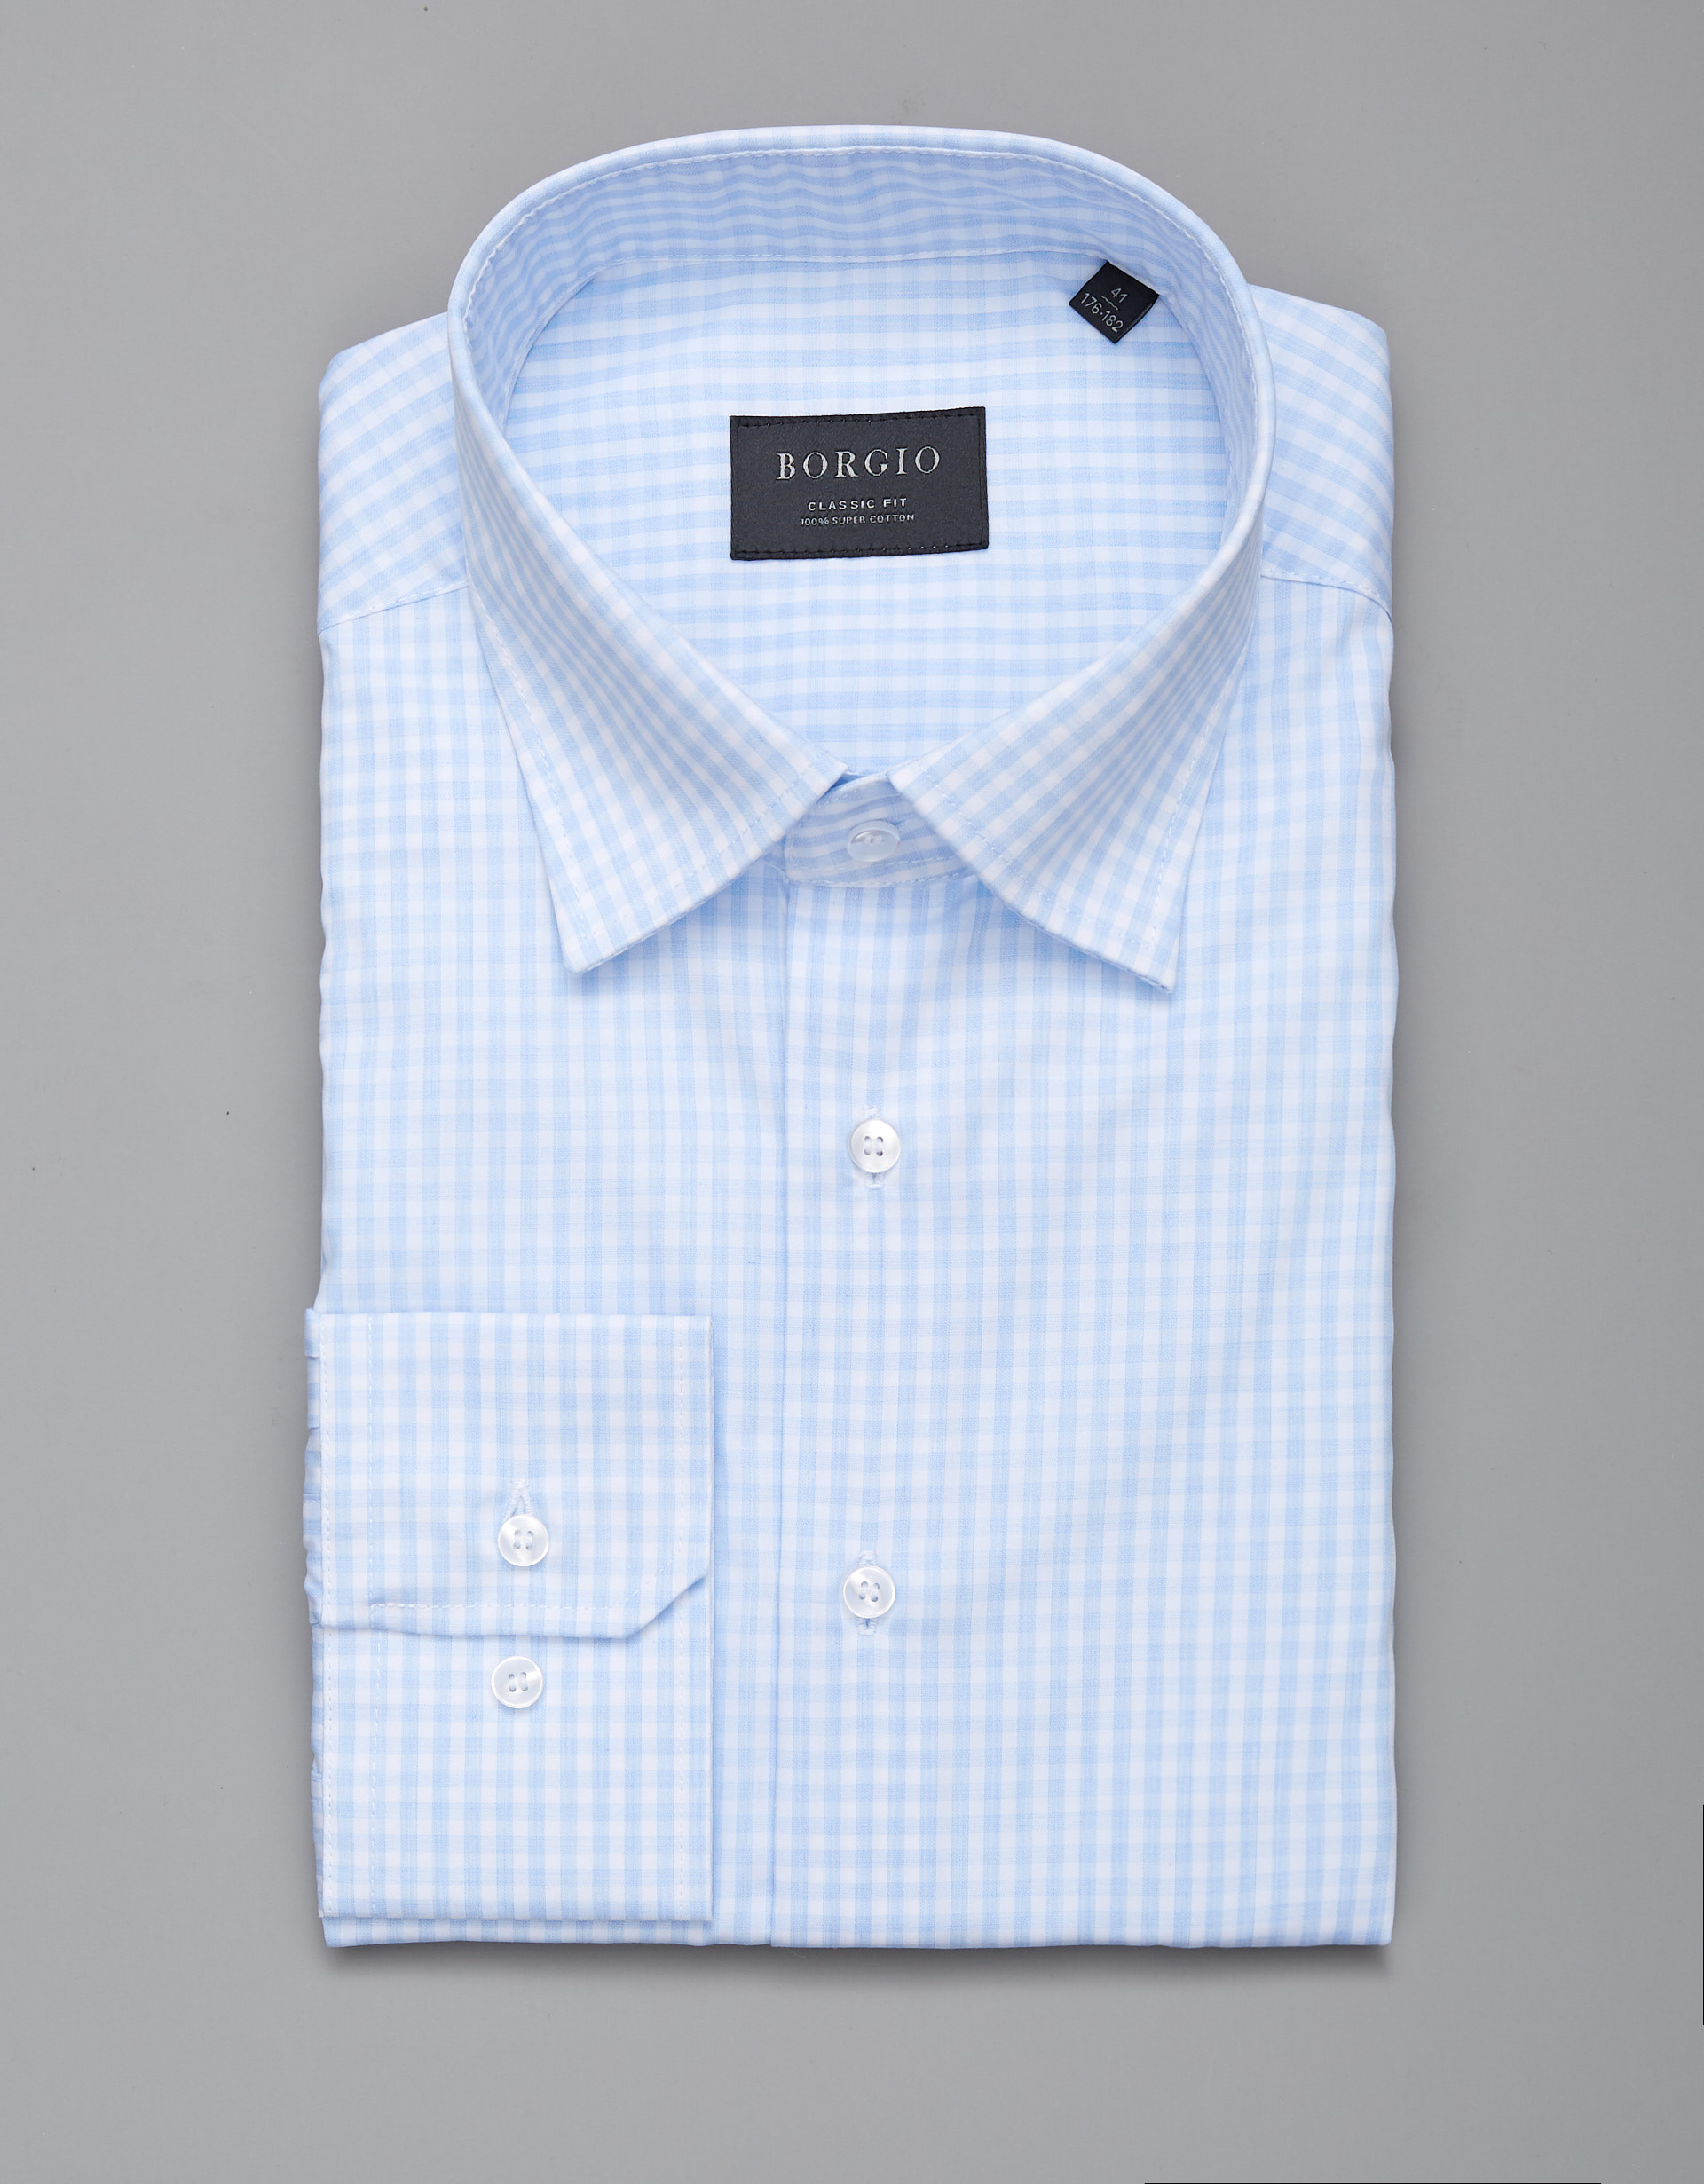 Borgio koszula matera 00270 długi rękaw błękit classic fit